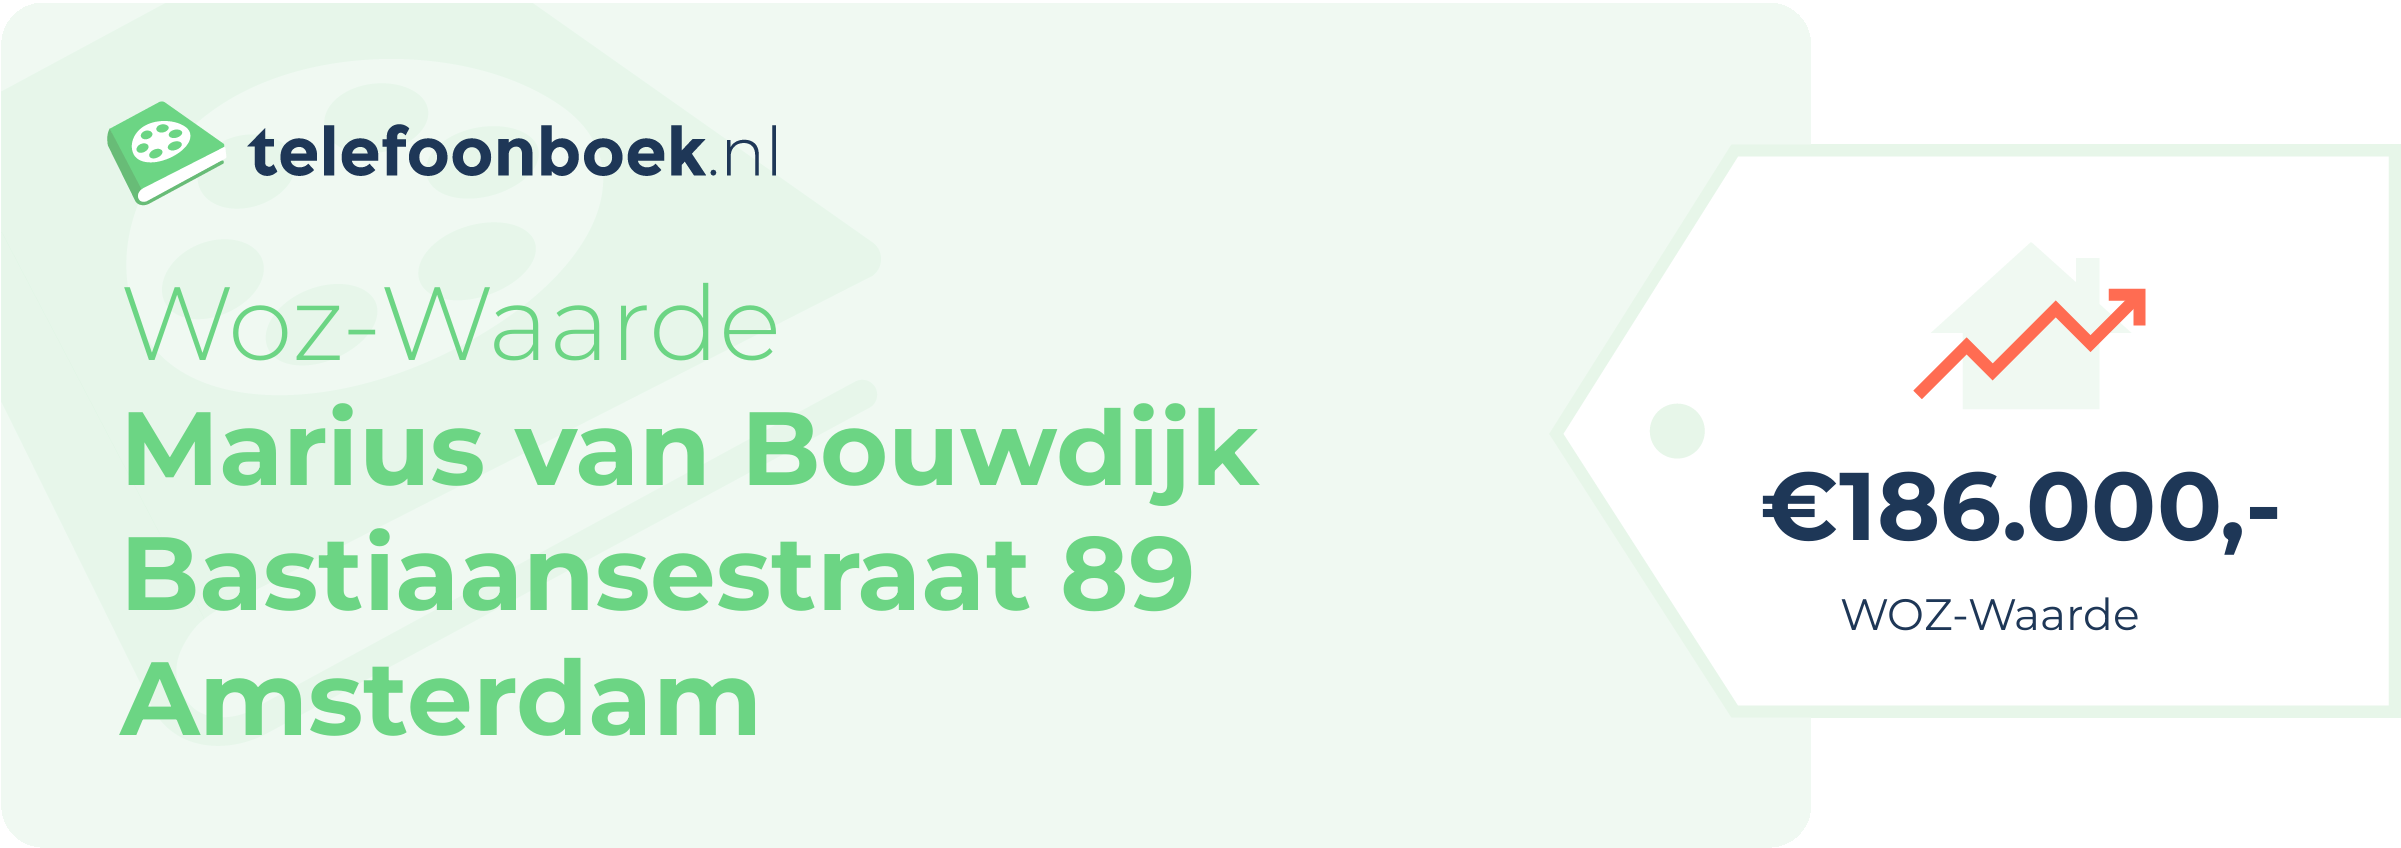 WOZ-waarde Marius Van Bouwdijk Bastiaansestraat 89 Amsterdam